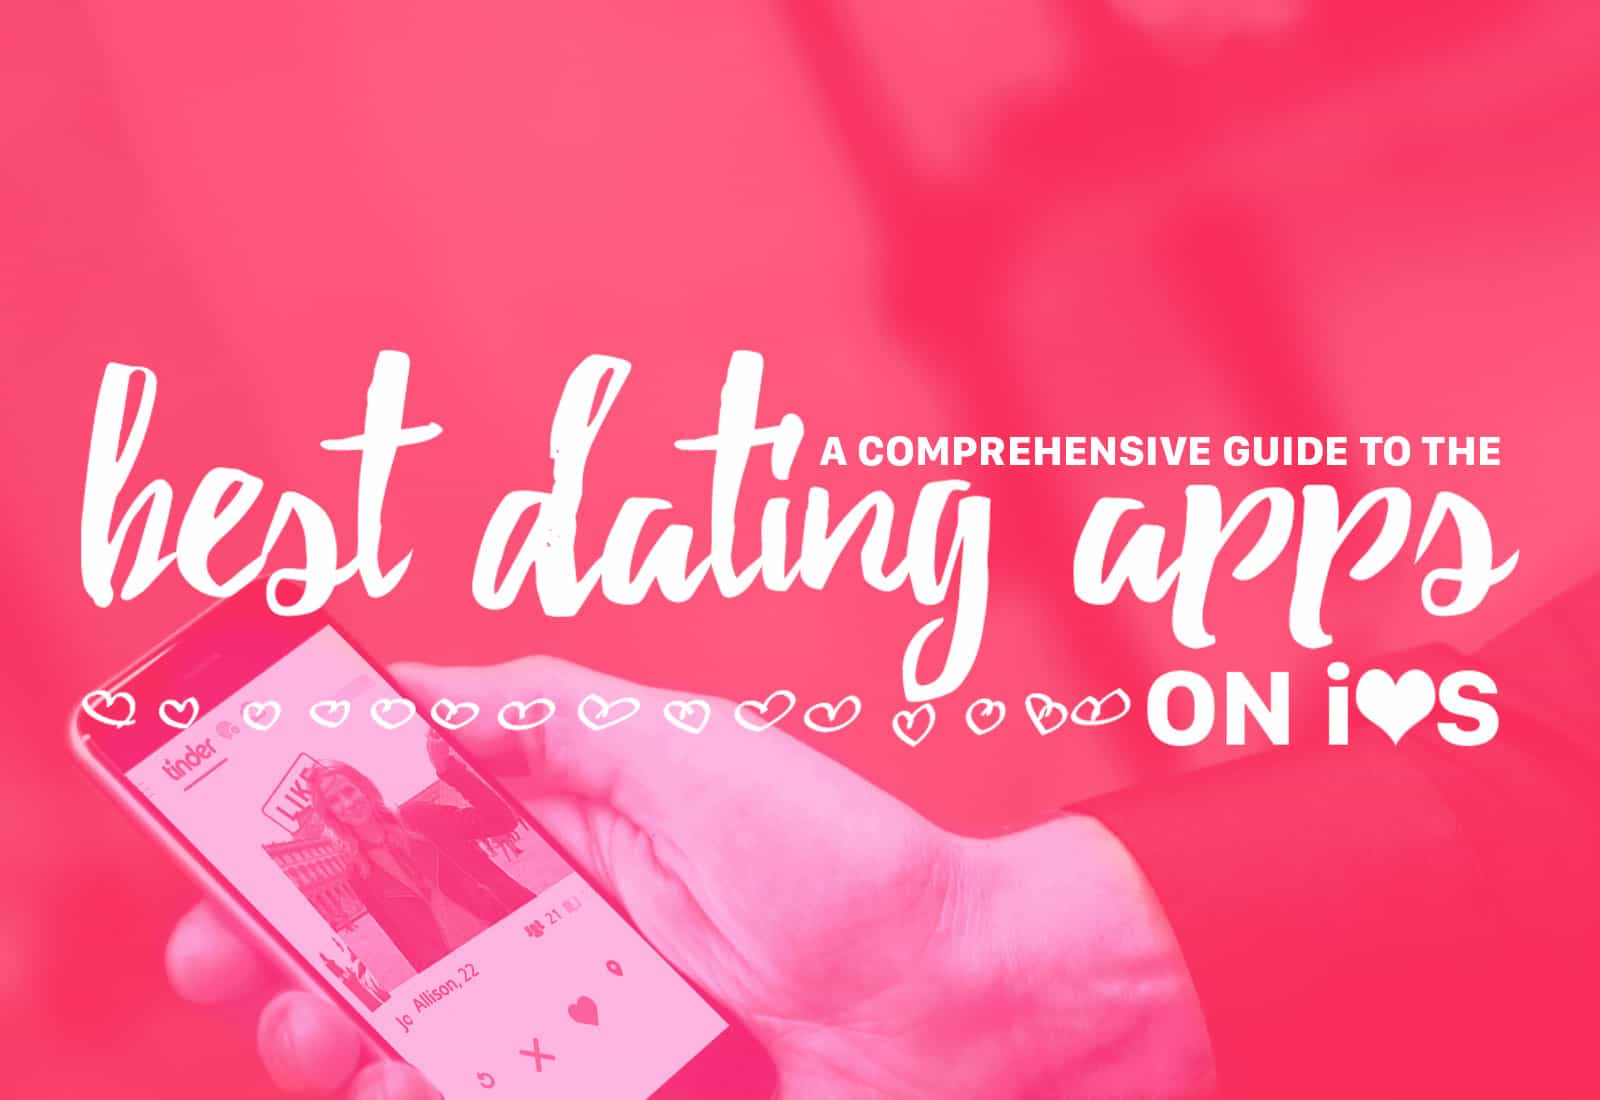 viteza datând peste 40 nottingham germania dating apps